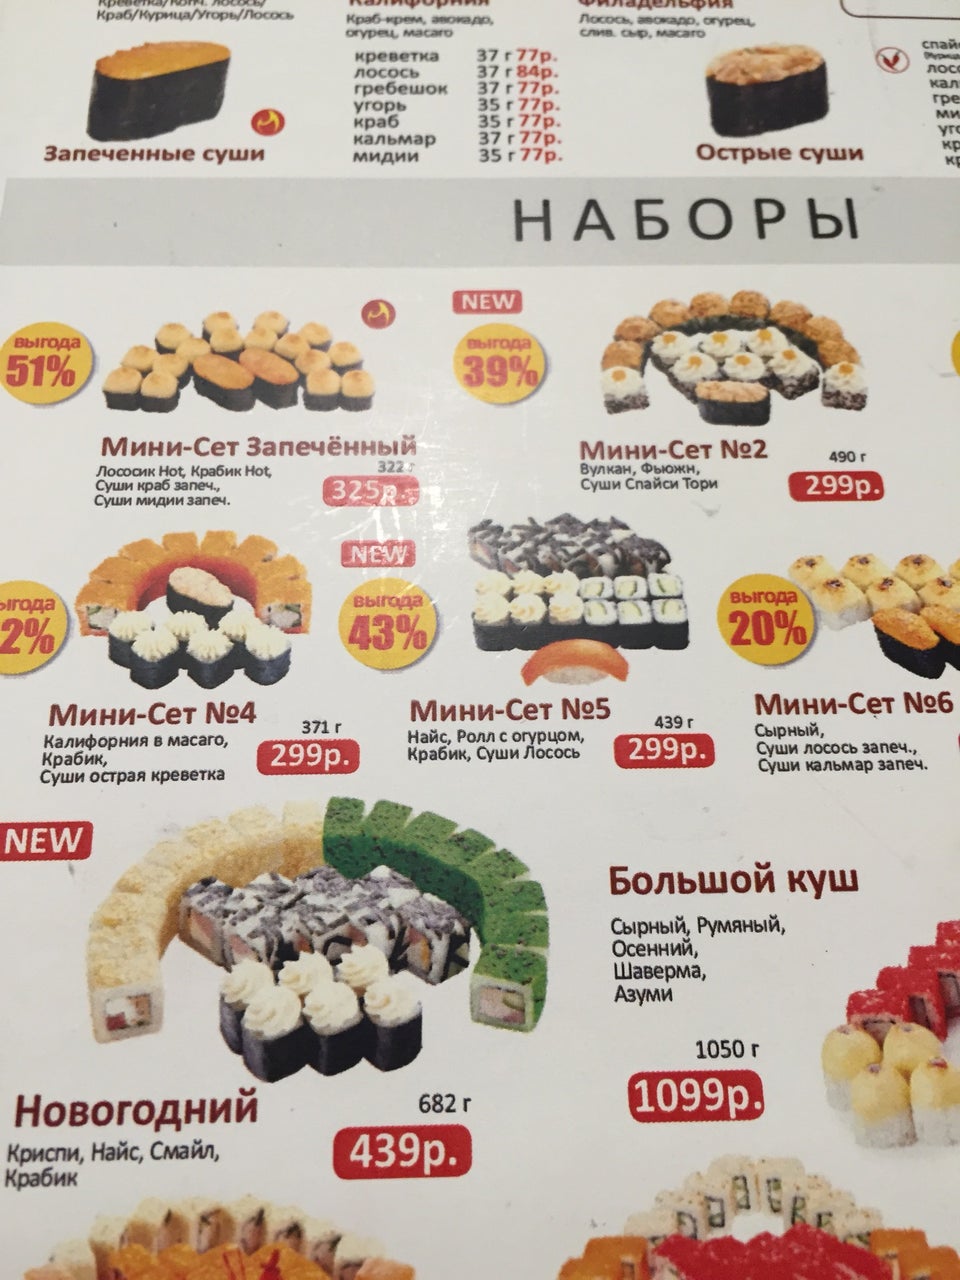 Заказать суши вок онлайн москва фото 26